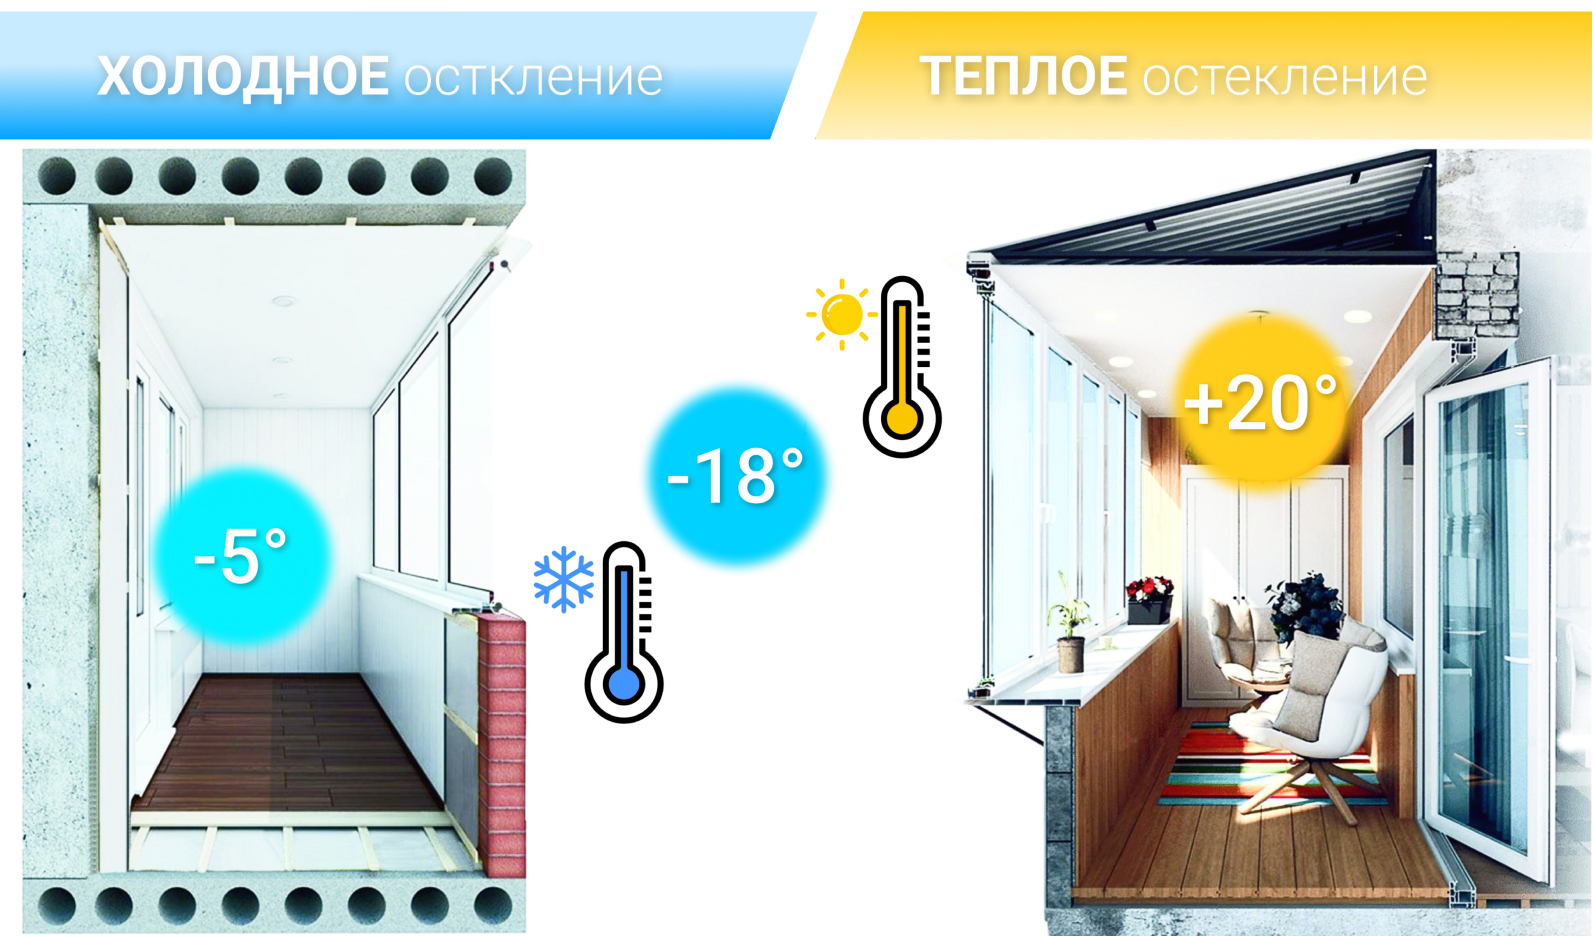 Замена холодного остекления на балконе: преимущества и пошаговый процесс